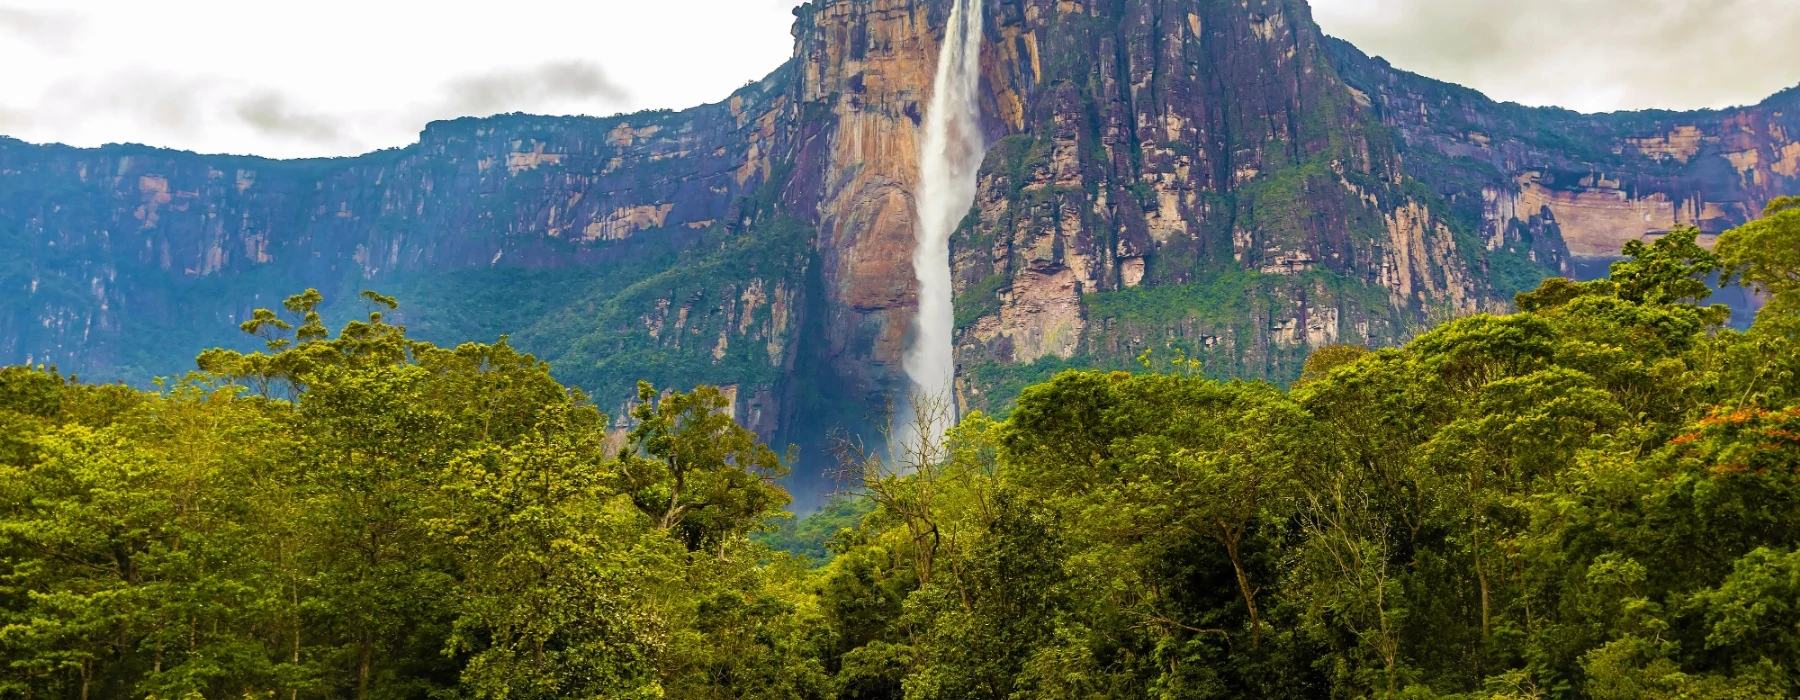 Roraima Trekking - Angel Falls